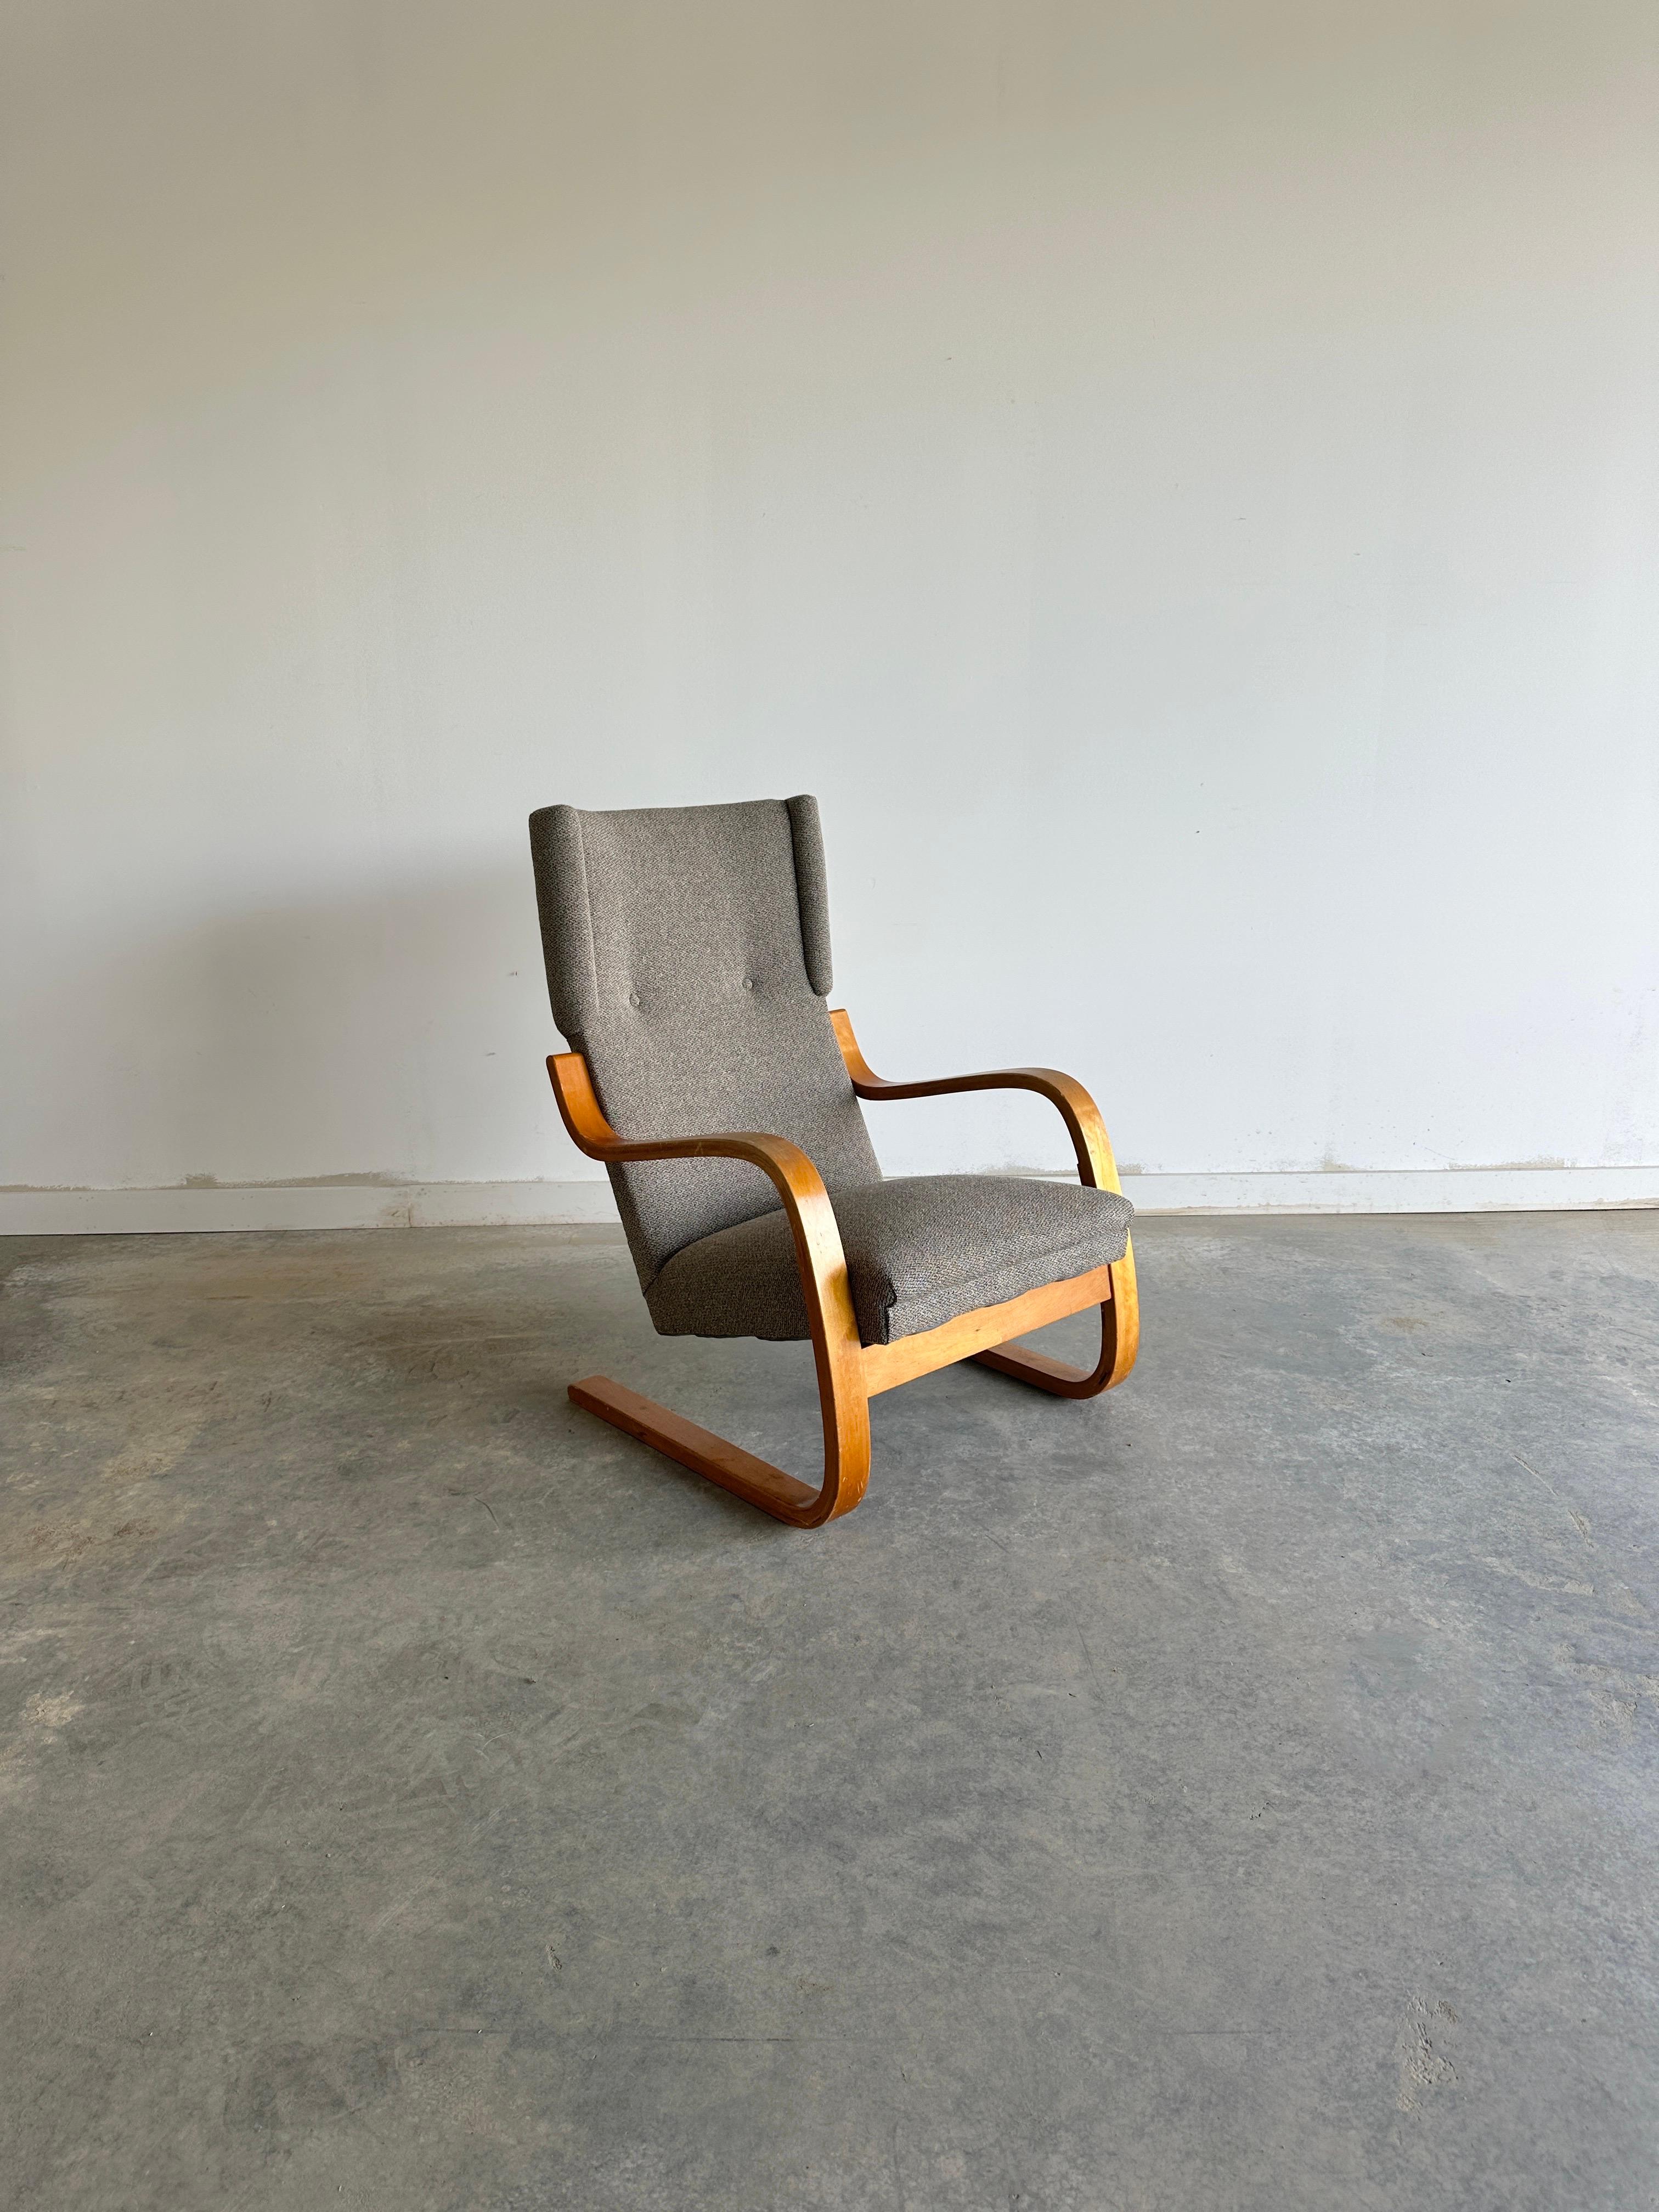 Der Wingback Lounge Chair 36/401 von Alvar Aalto für Artek ist ein klassisches Beispiel für die skandinavische Moderne. Dieser 1933 entworfene Stuhl verfügt über einen freitragenden Rahmen aus laminiertem Birkenholz, der sich anmutig wölbt, um Sitz